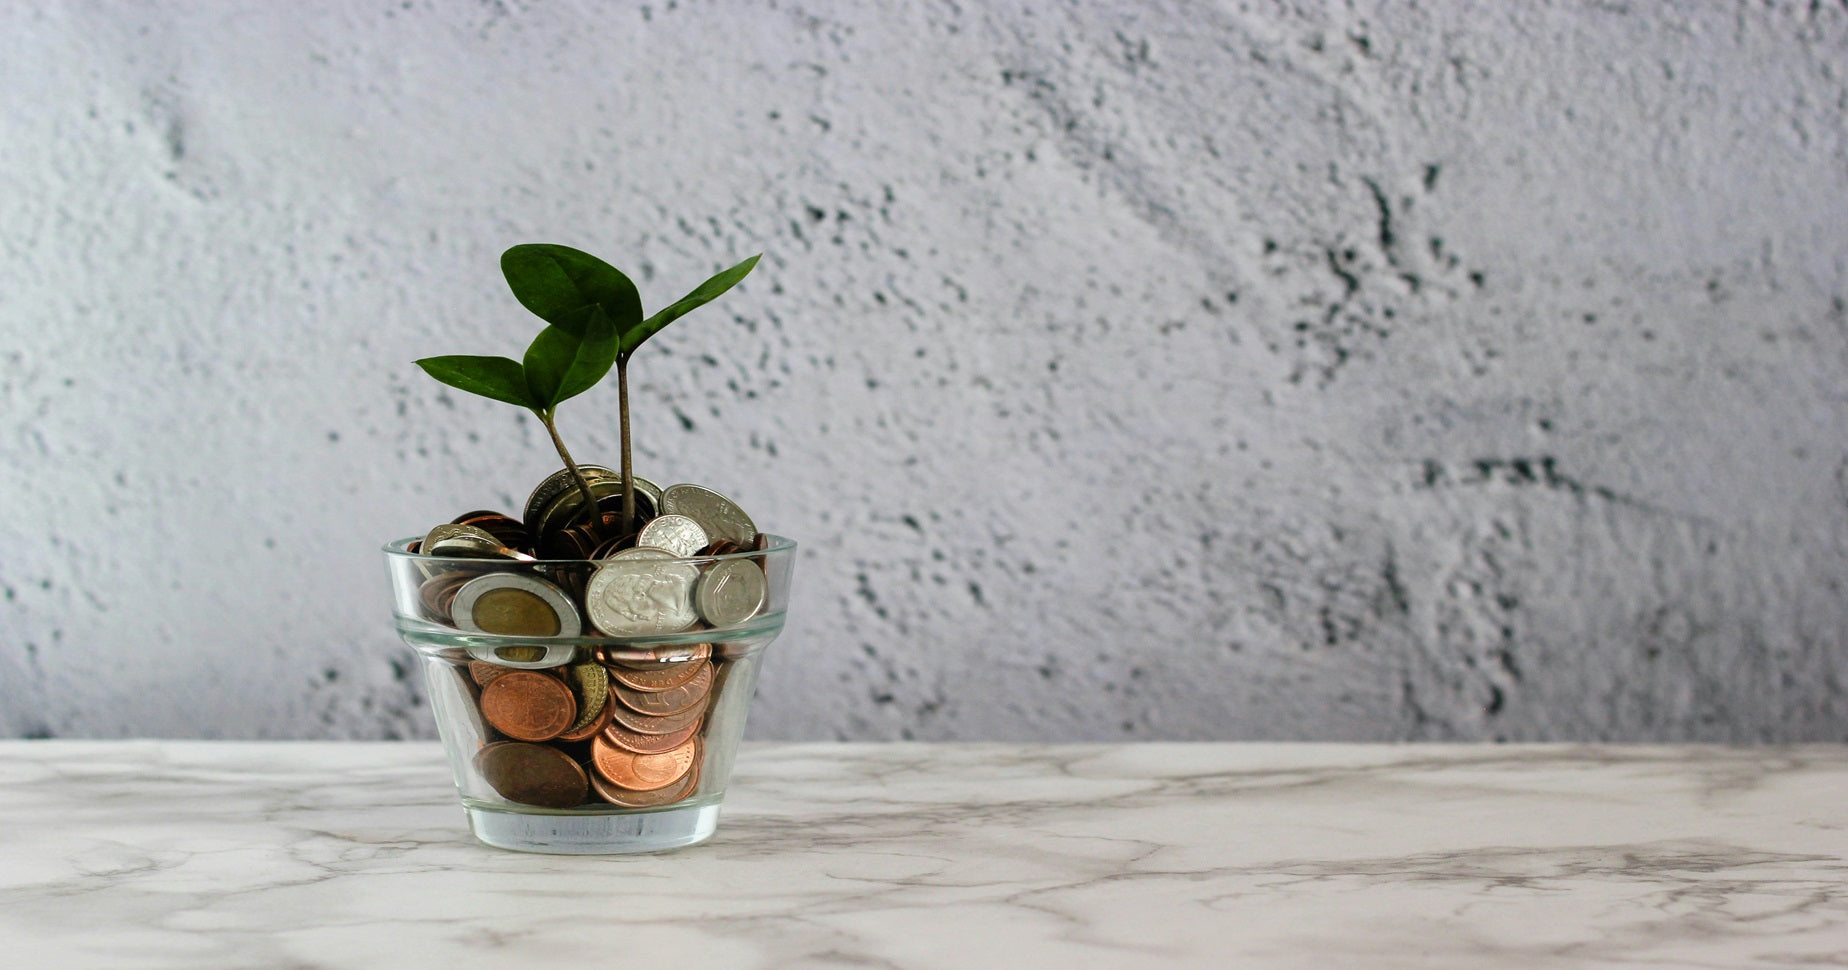 Zu sehen ist ein durchsichtiger kleiner Blumentop mit Bargeld und einer kleinen Pflanze, die auf dem Geld wächst.